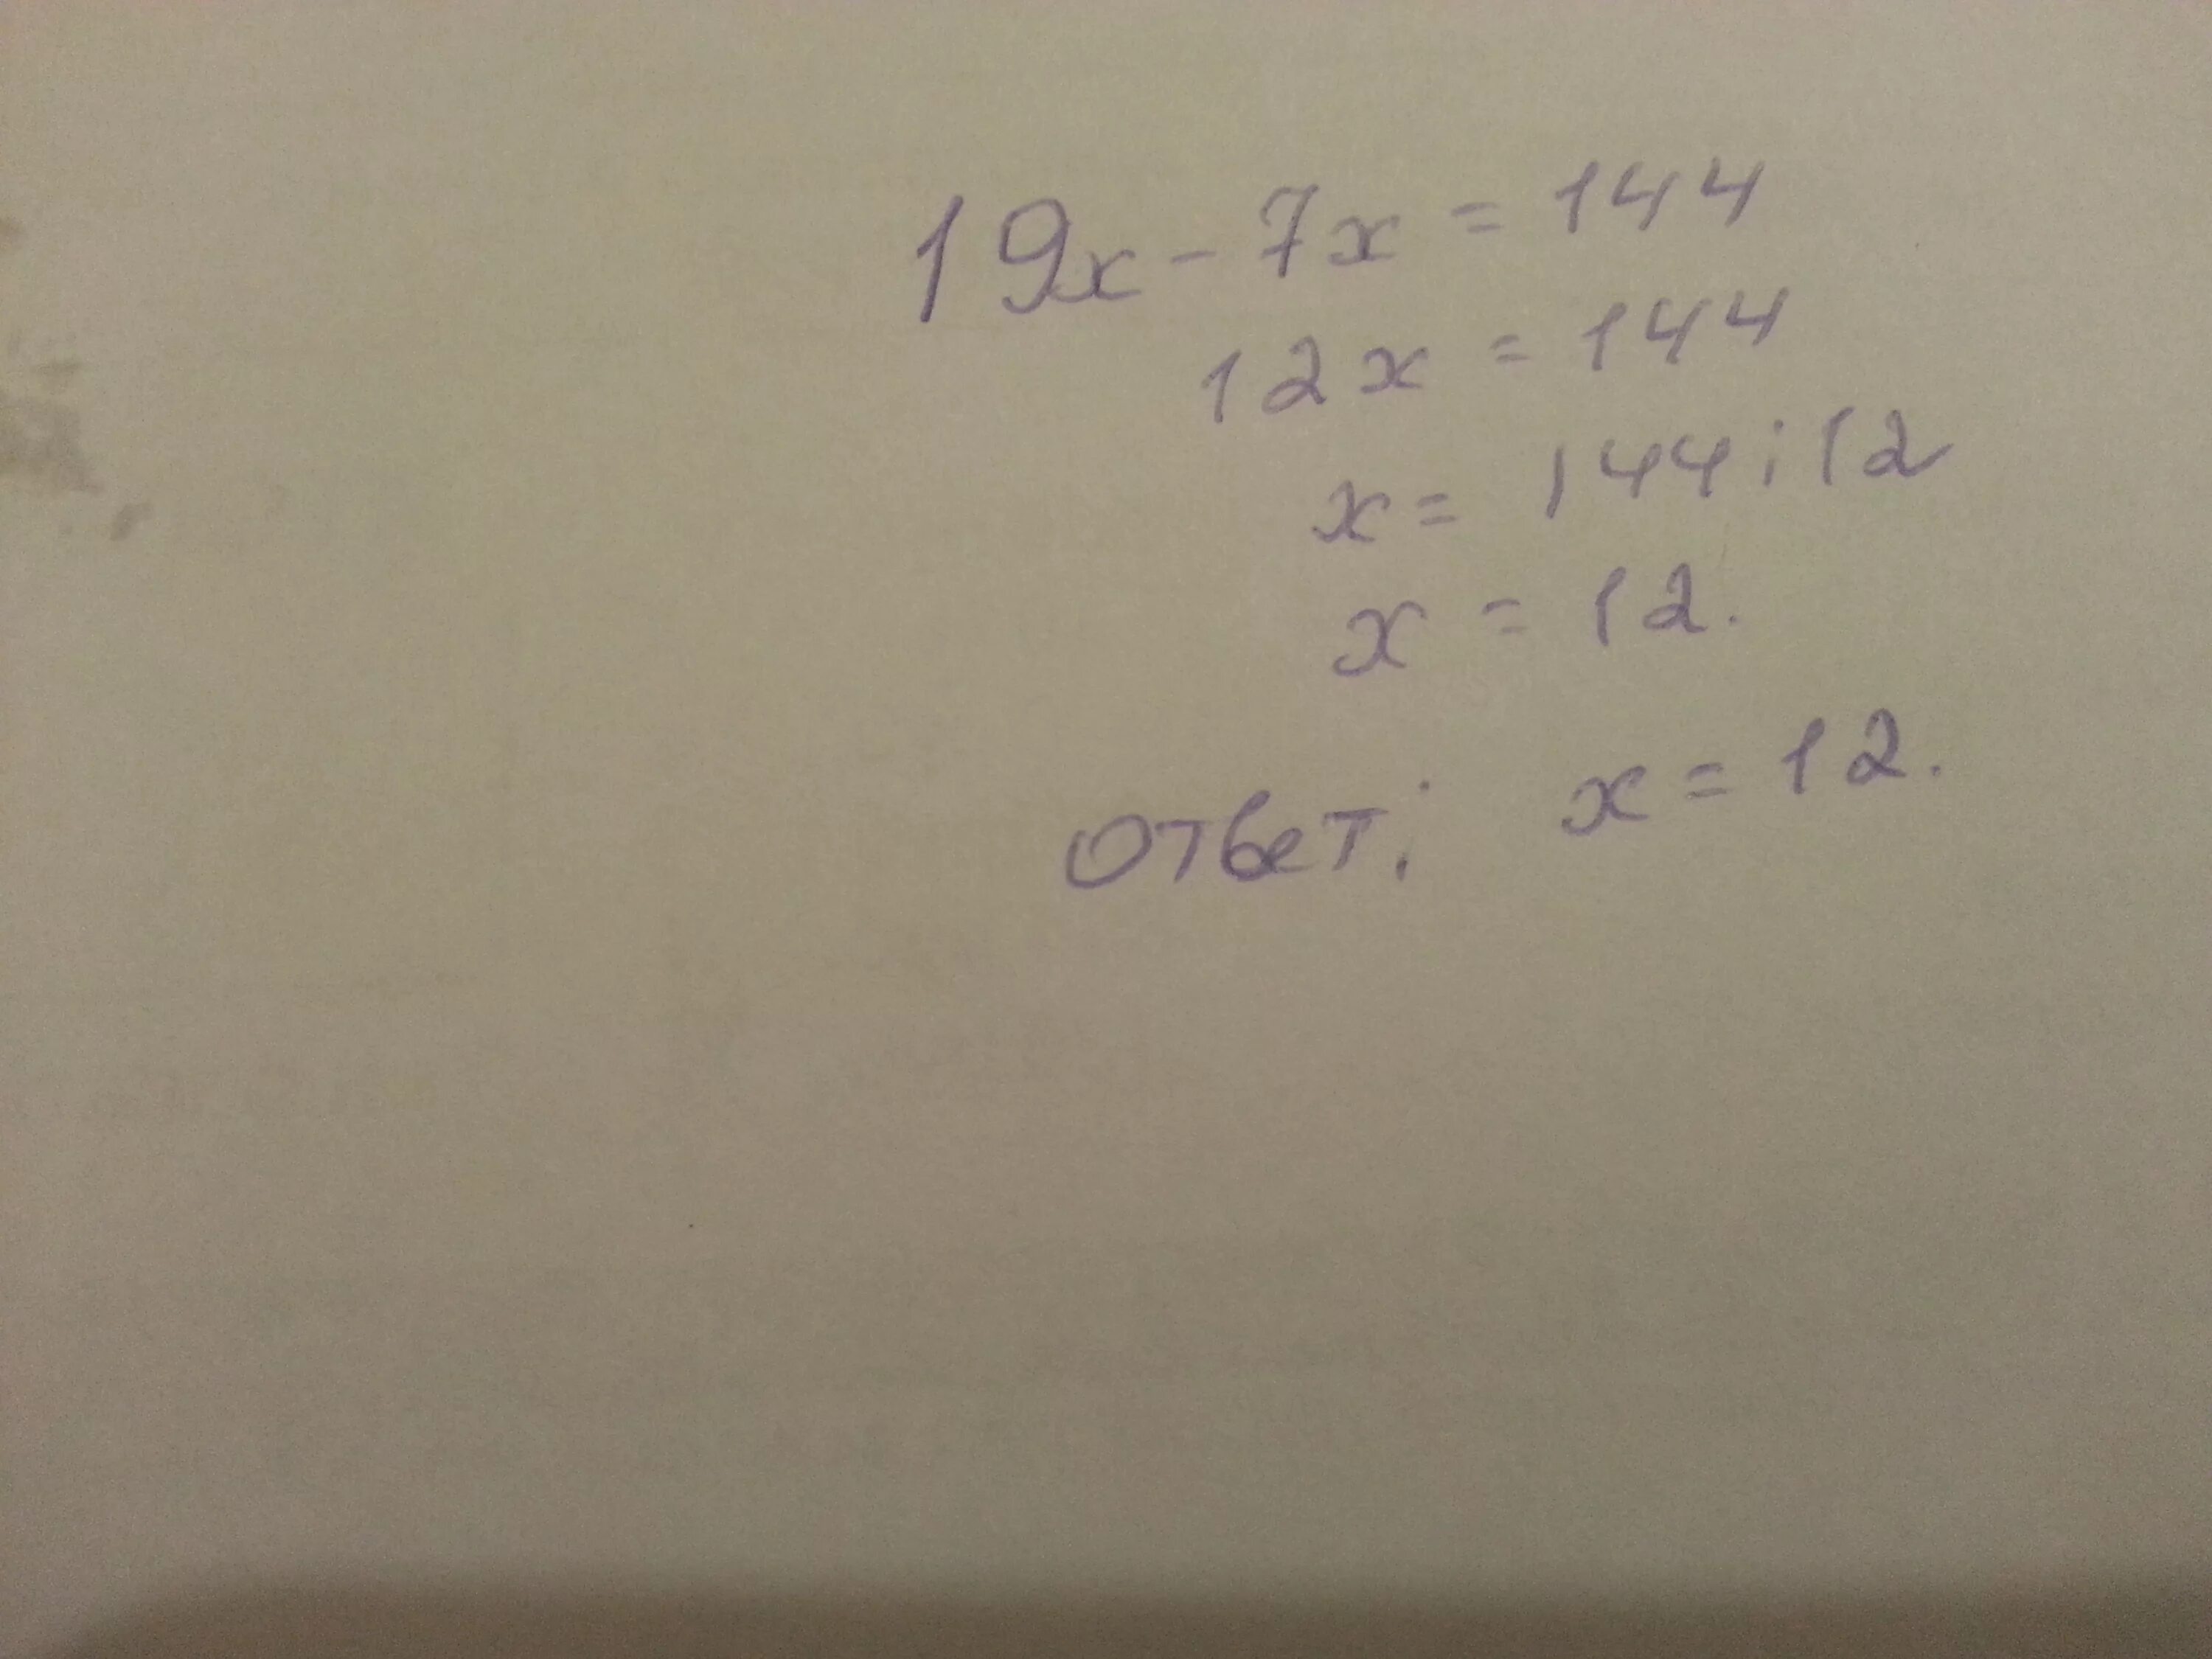 3х 7 х 18. 19х-7х 144. 19х 7х 144 решение. Решение уравнения 19x-7x 144. 19x-7x=144.